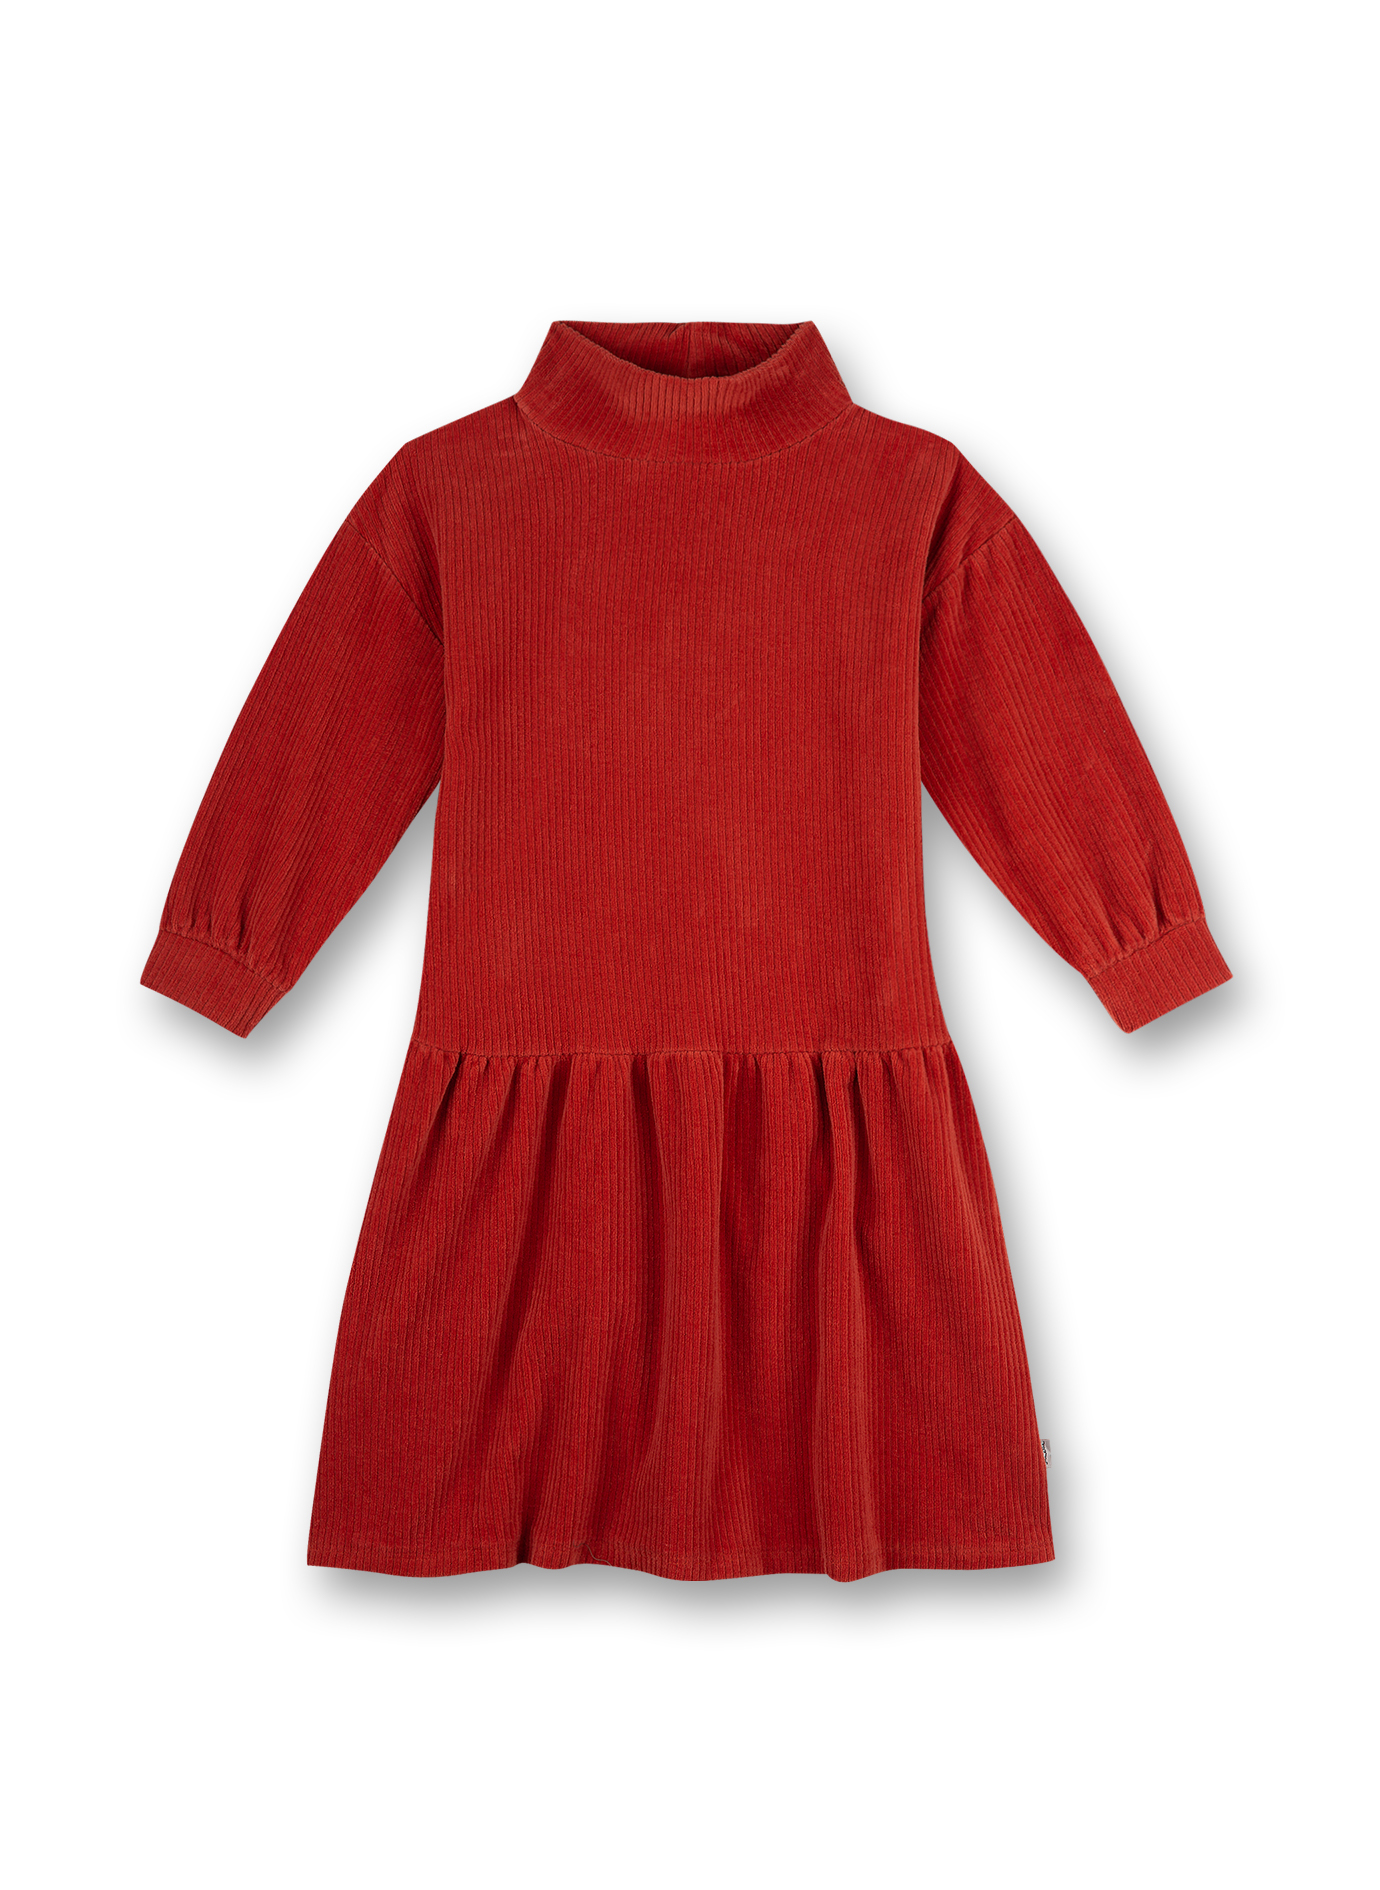 Mädchen-Kleid Rot Sweet Desaster